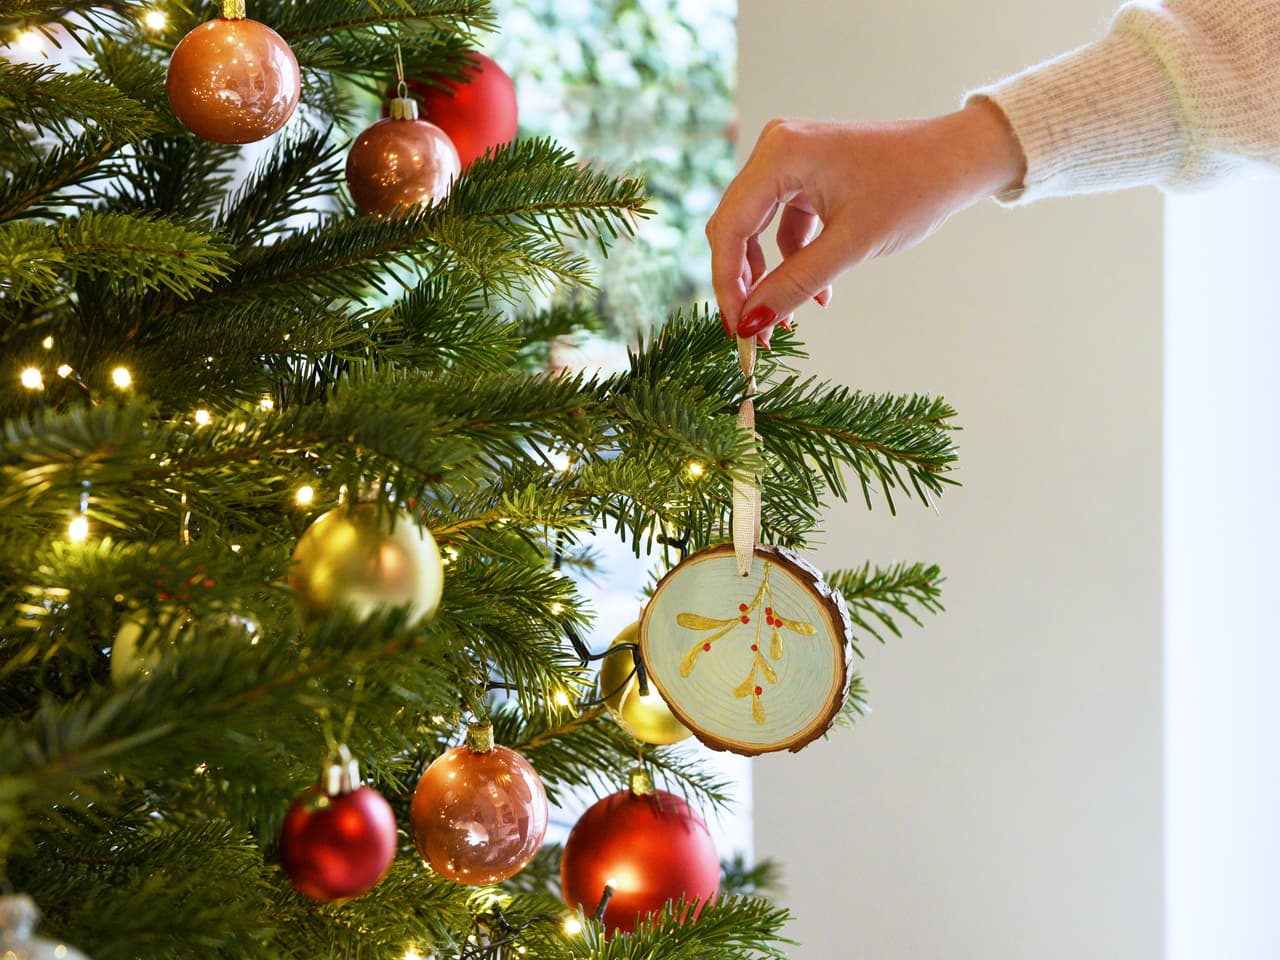 Die Hand einer Person hängt ein in Künstlerqualität mit hochwertiger edding Acrylfarbe gefertigtes Ornament an einen festlich geschmückten Weihnachtsbaum.